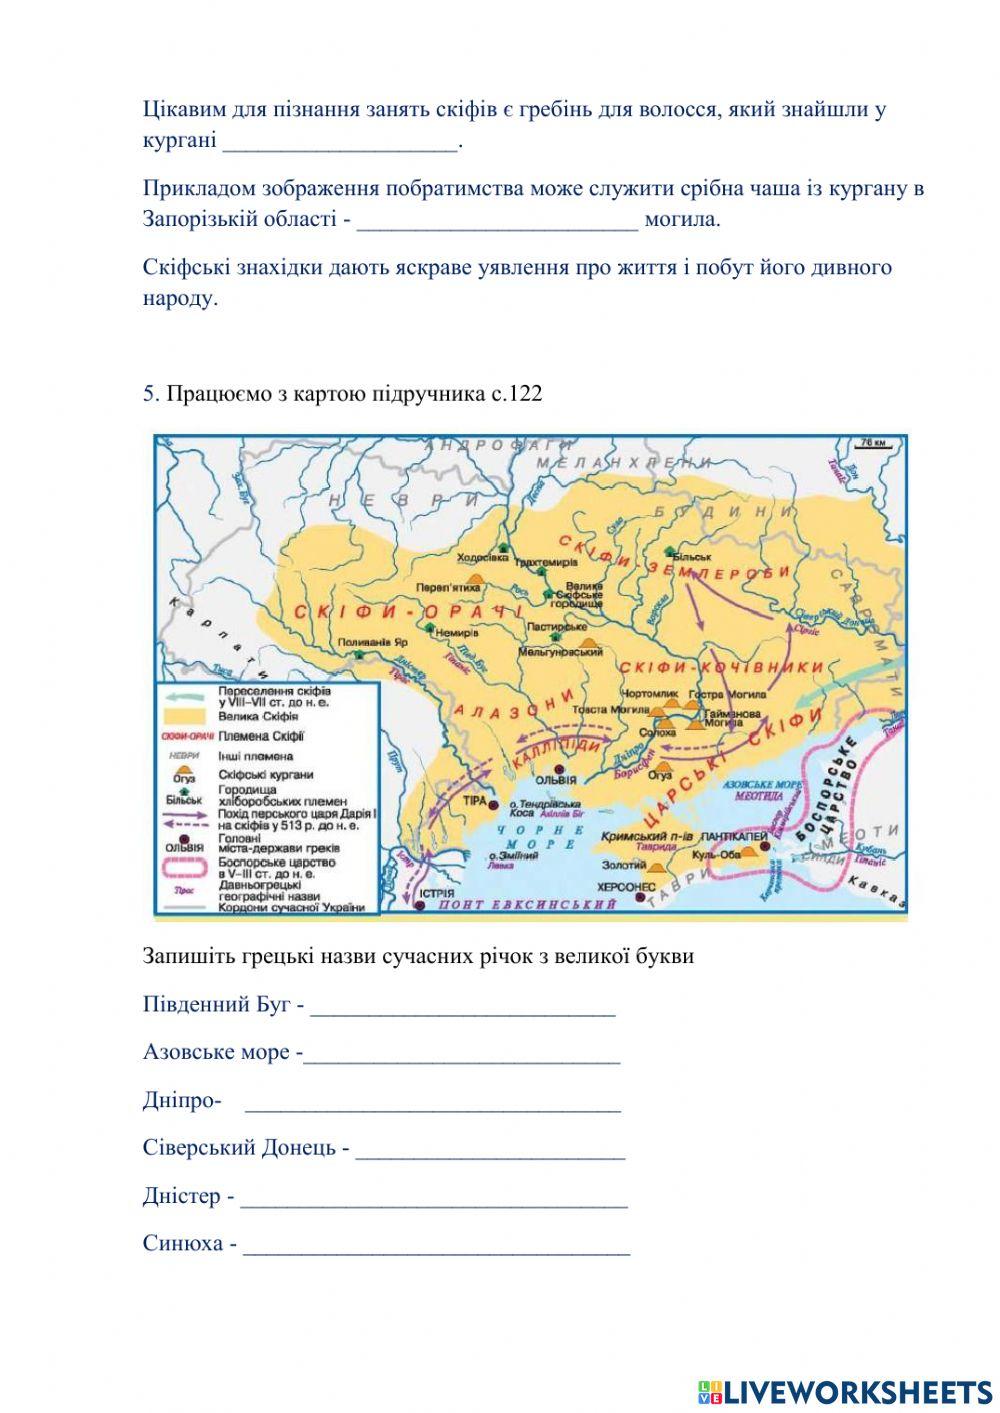 Скіфи на території України